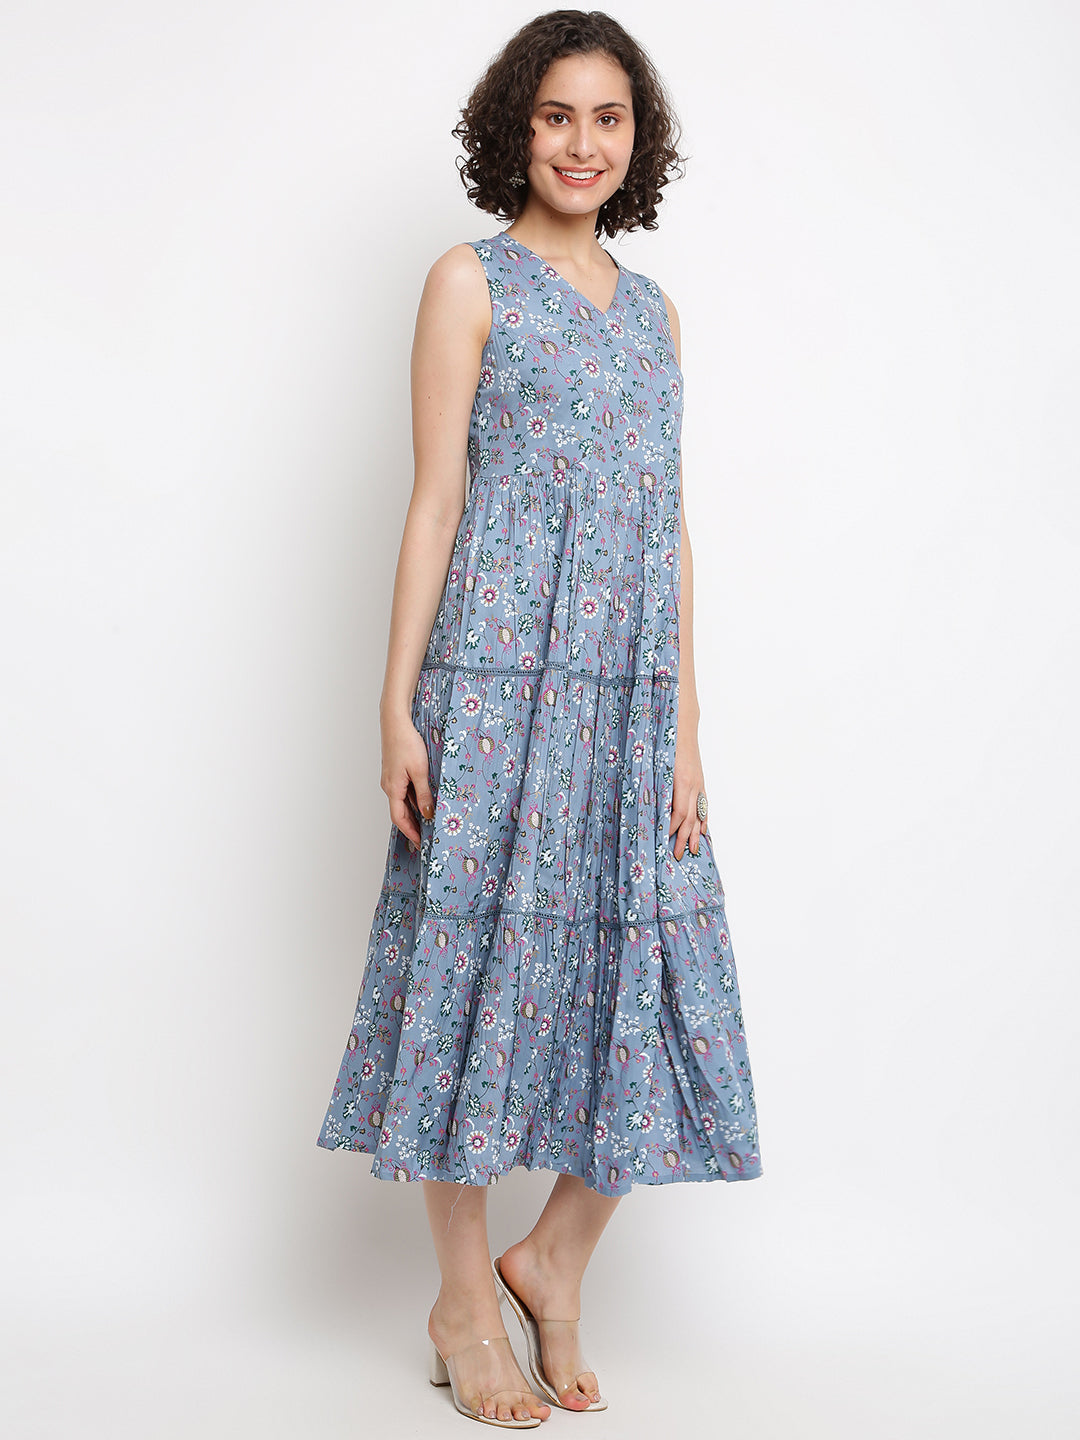 Women's Printed Blue Tiered Dress - IMARA